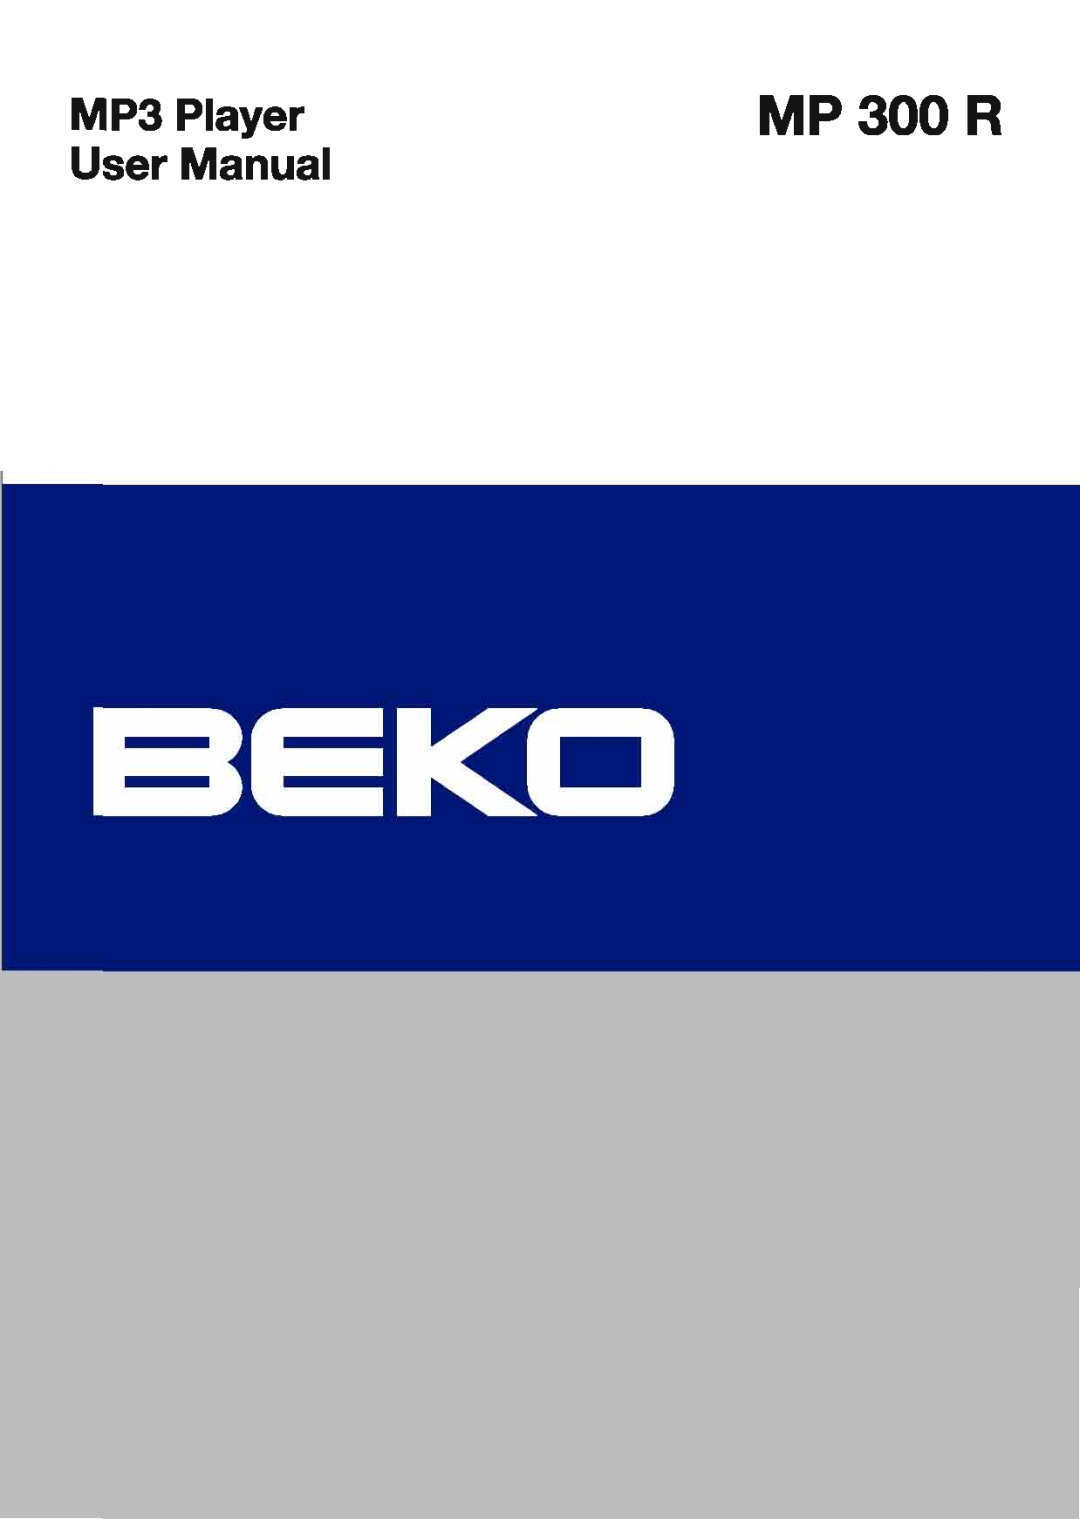 Beko MP 300 R manual 